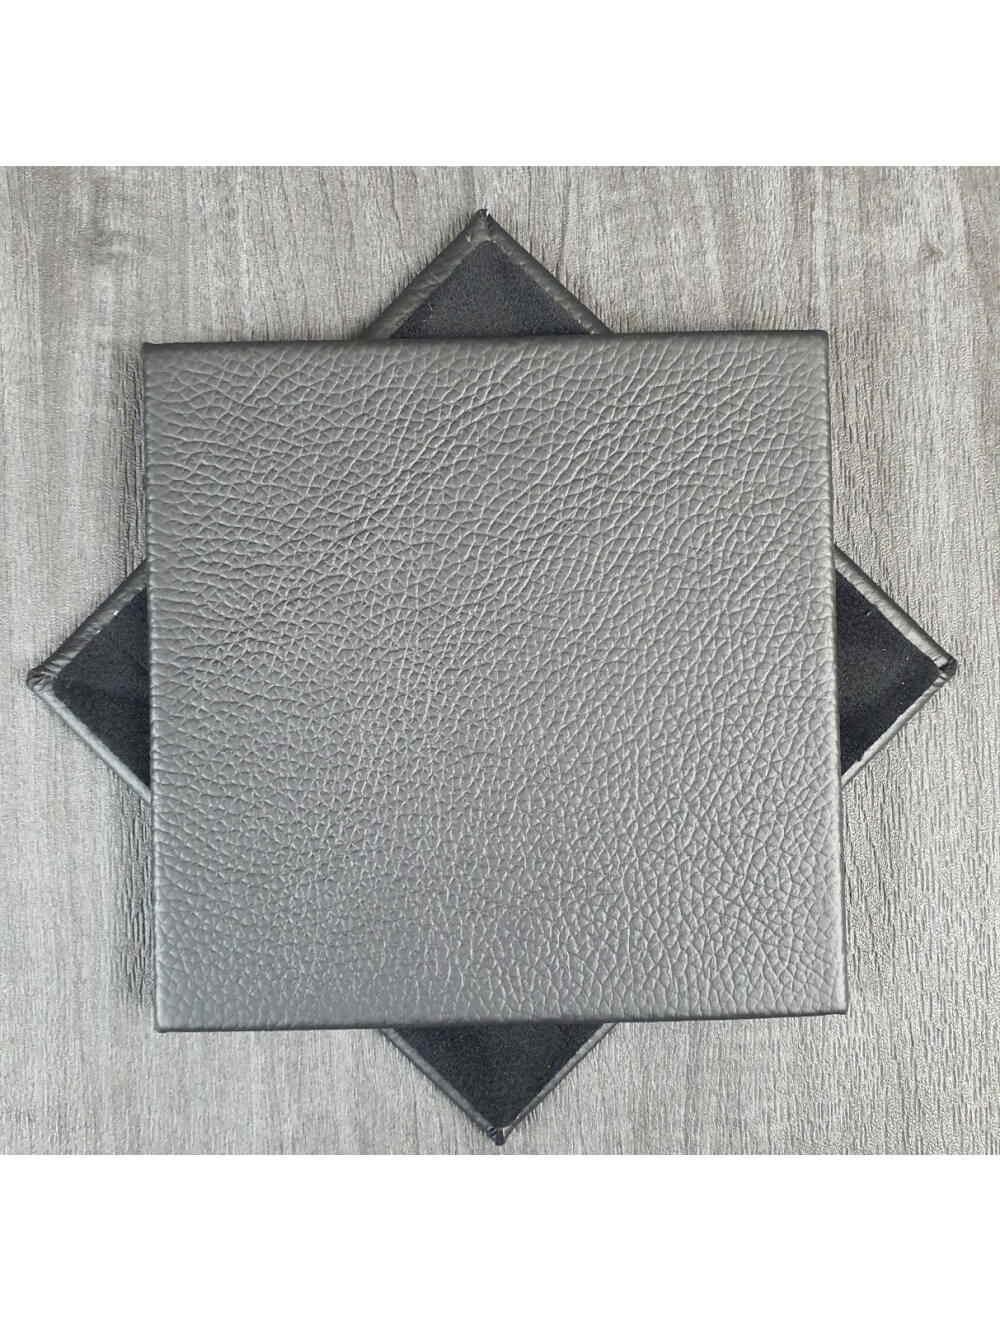 Coaster en cuir Shelly noir - 10 cm SQ (article de vente)